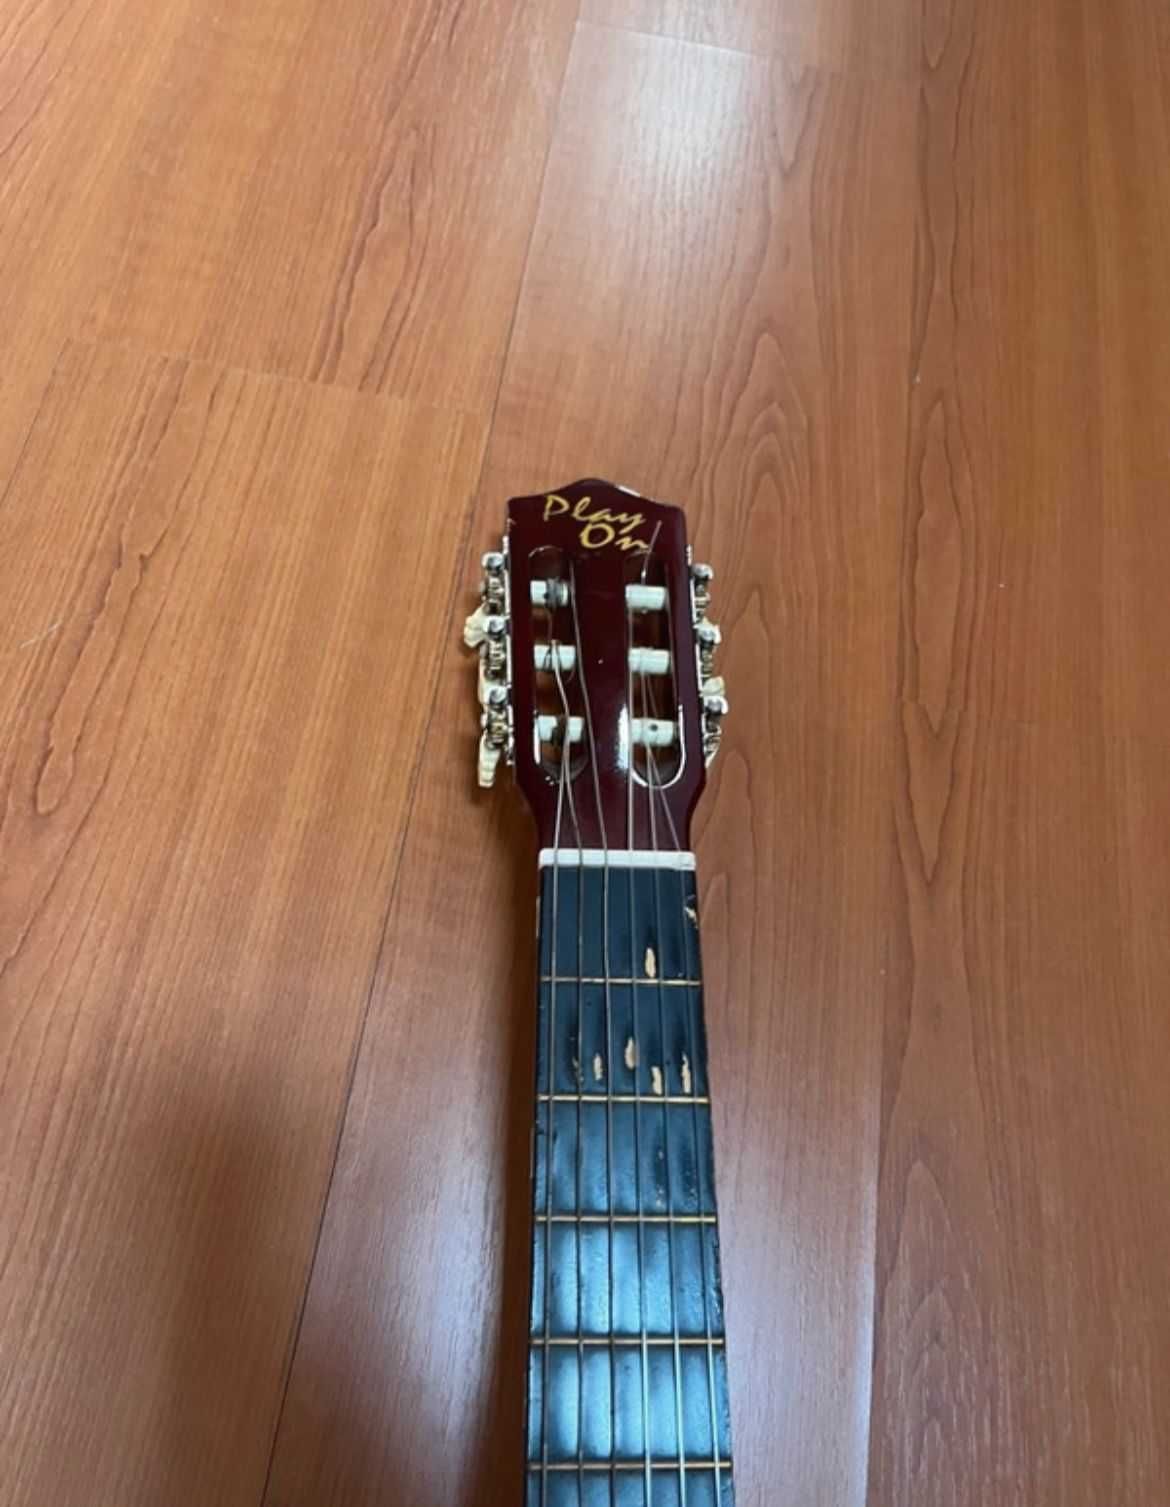 Guitarra da "Play On" com suporte tripé e capa protetora